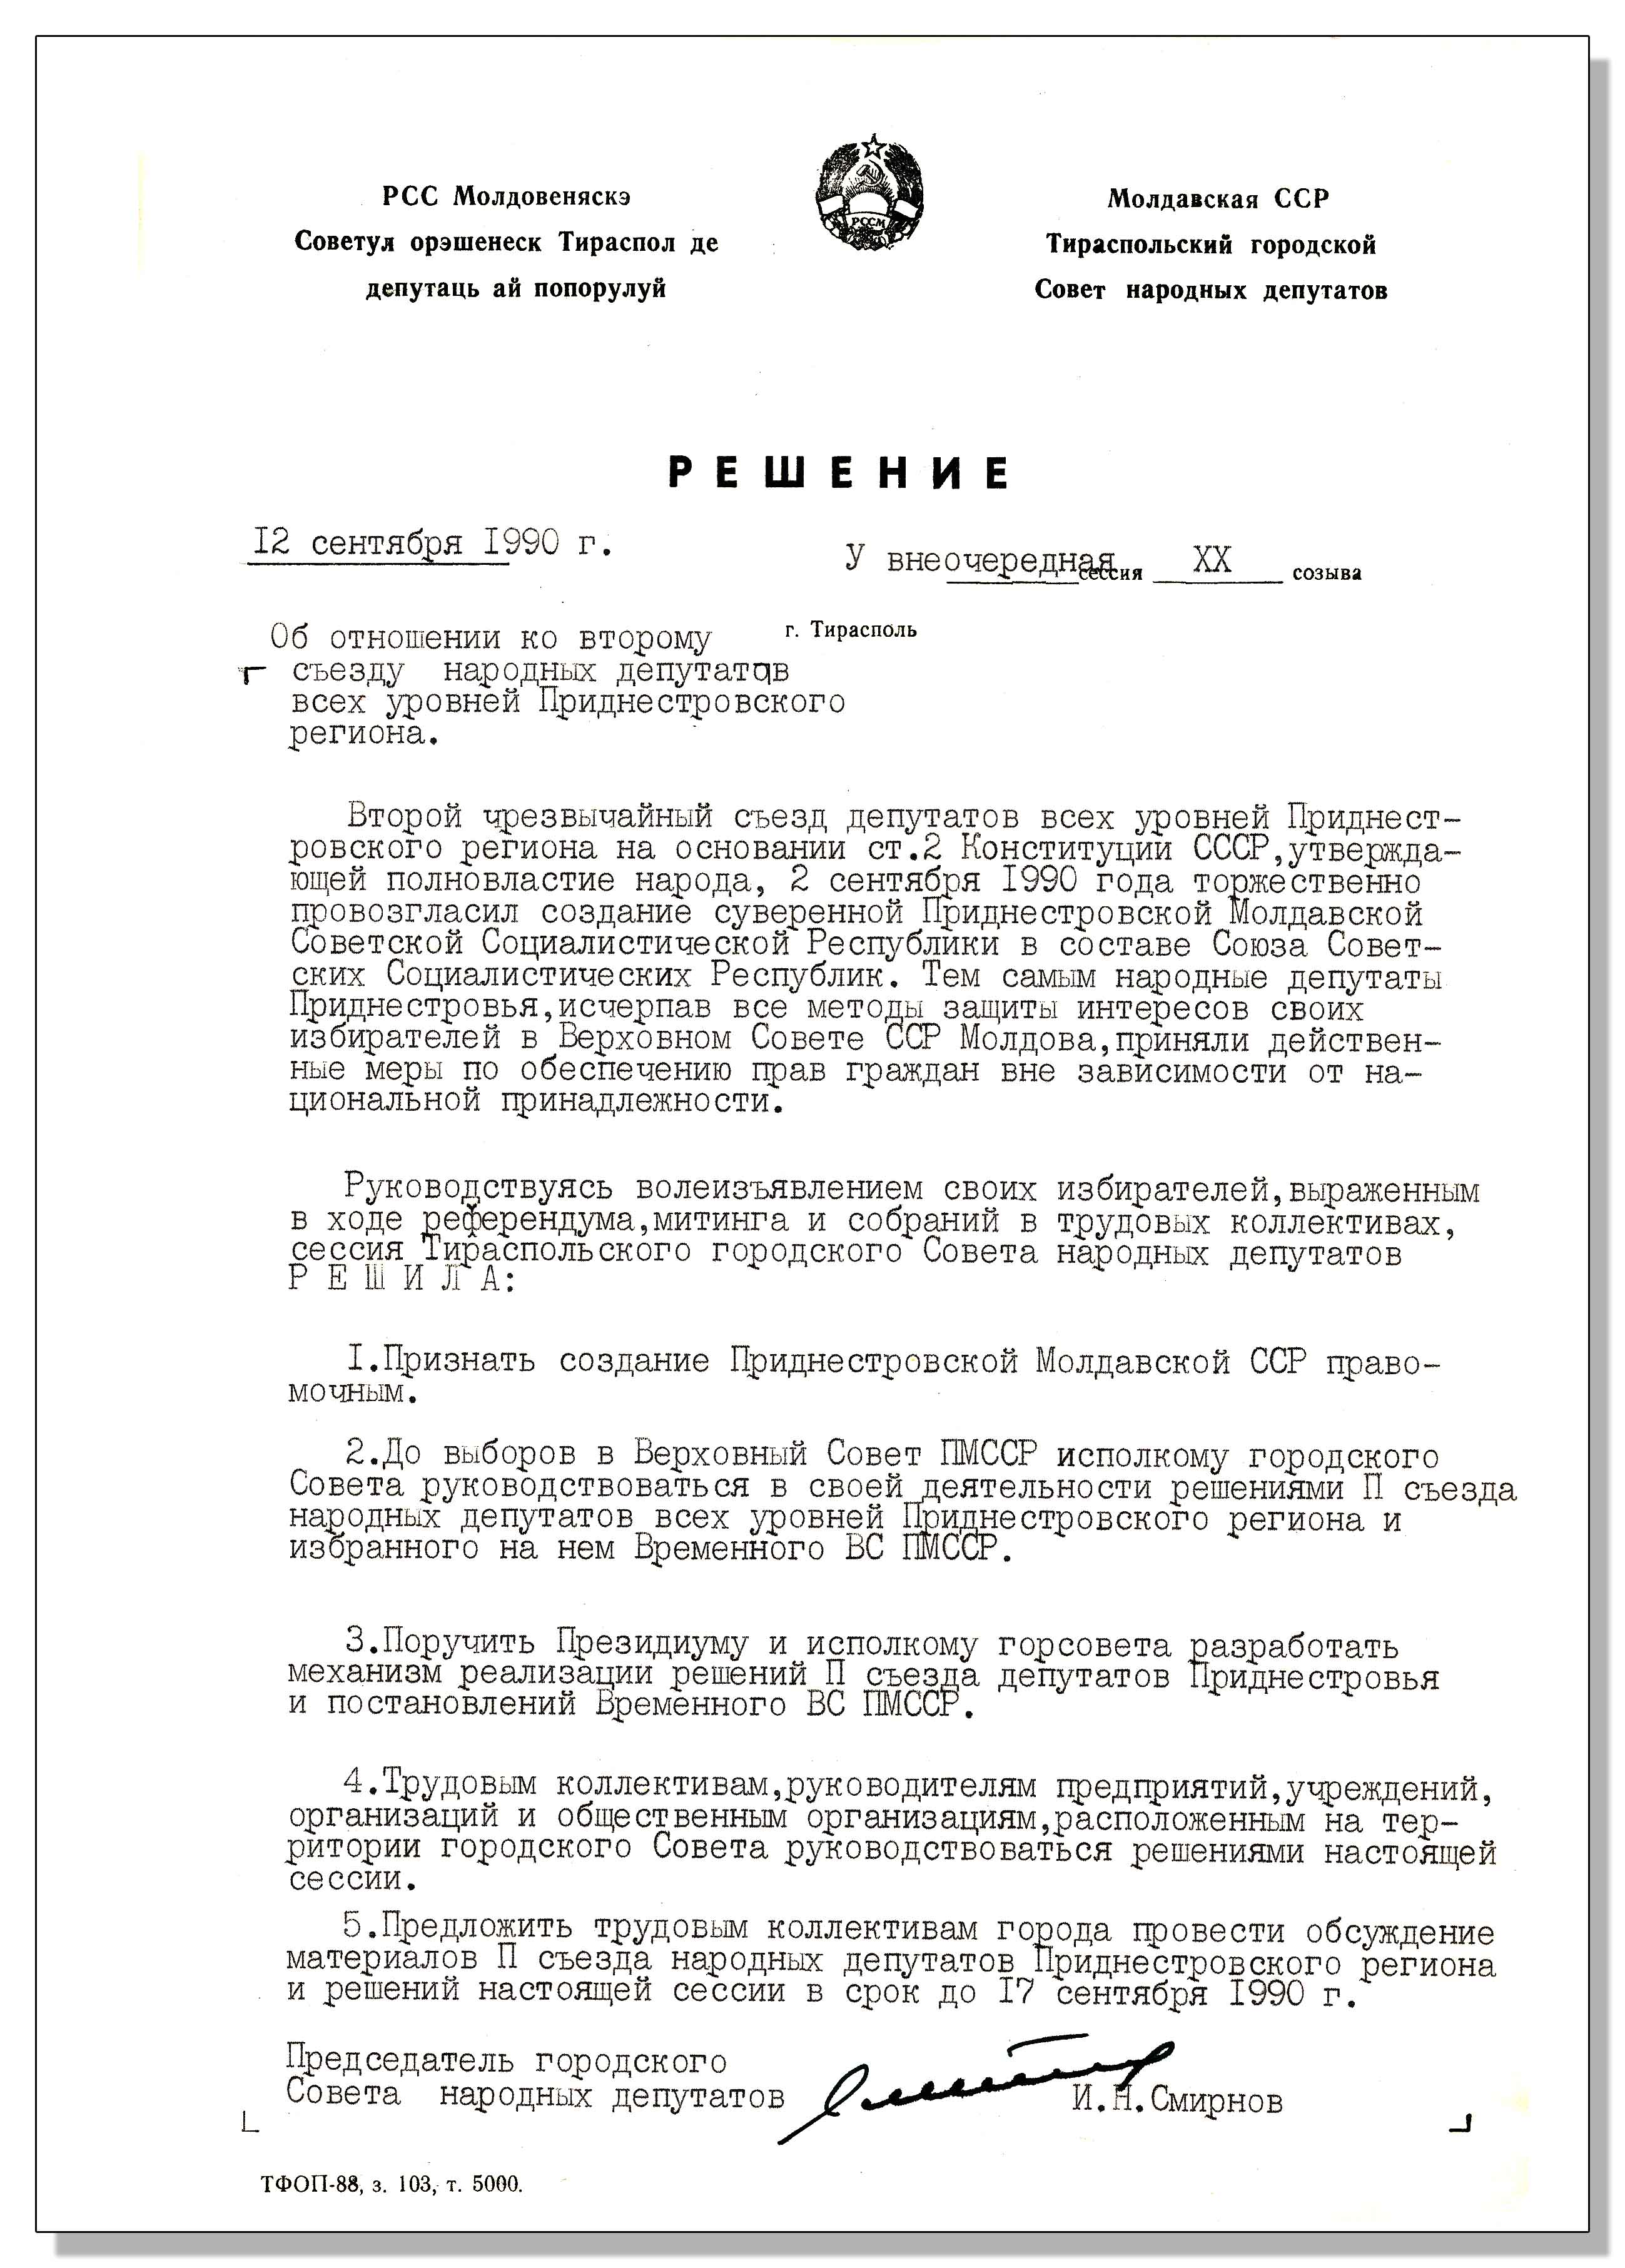 Государственная служба управления документацией и архивами Приднестровской Молдавской Республики День Республики Архивный документ месяца  